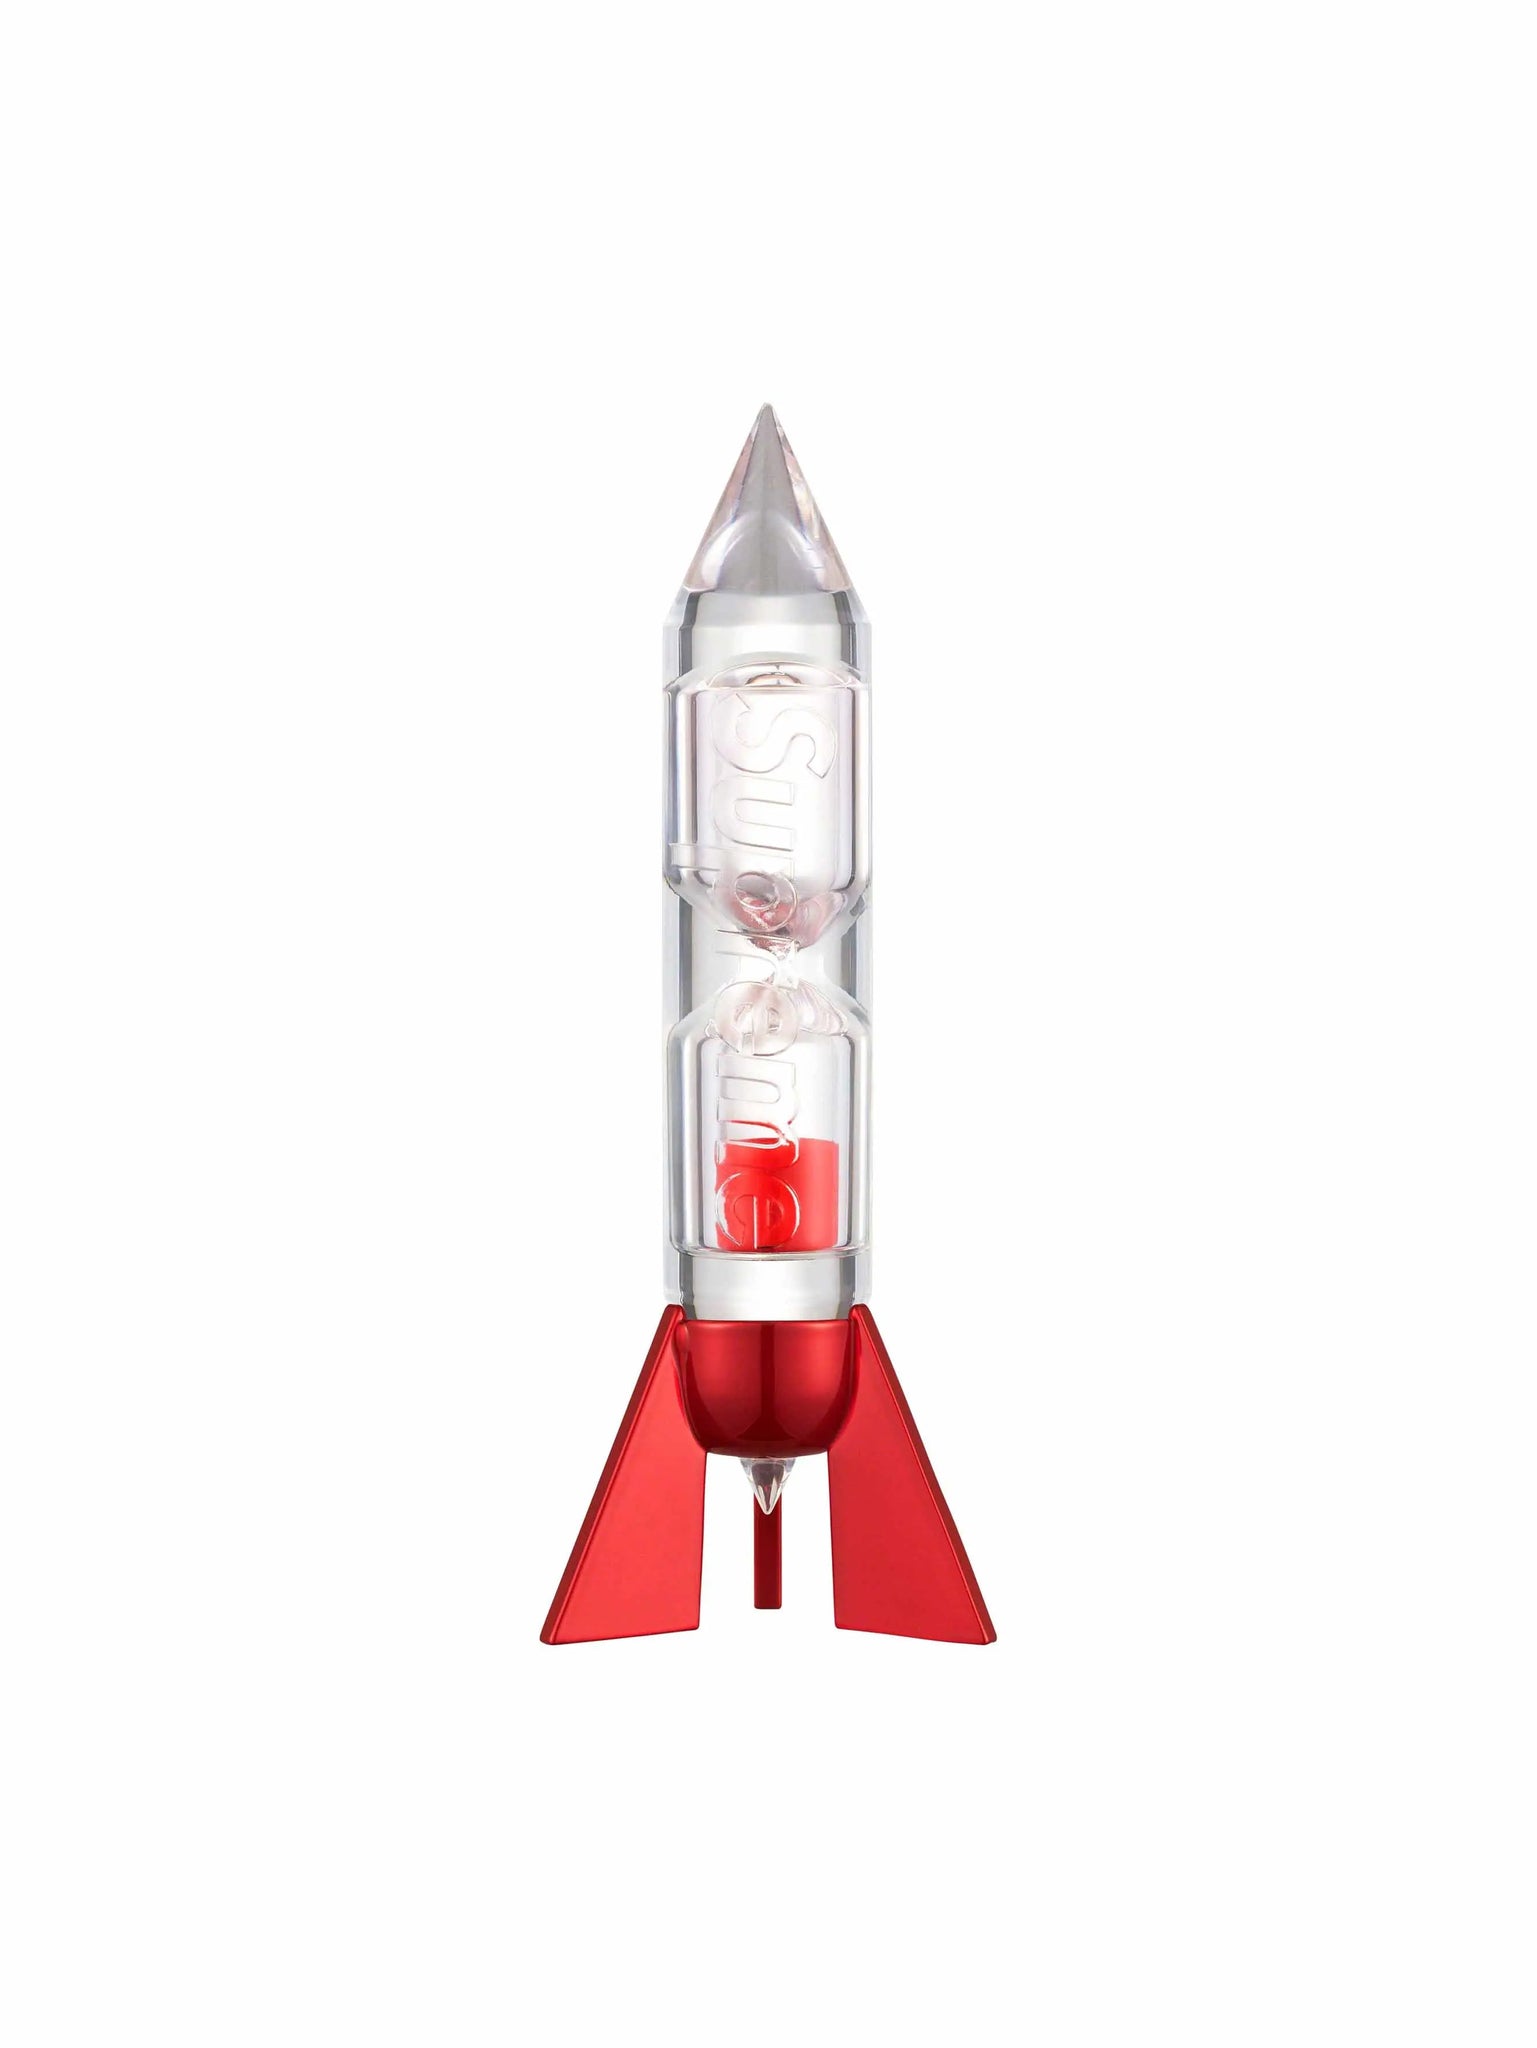 Supreme Rocket Timer Red - Prior